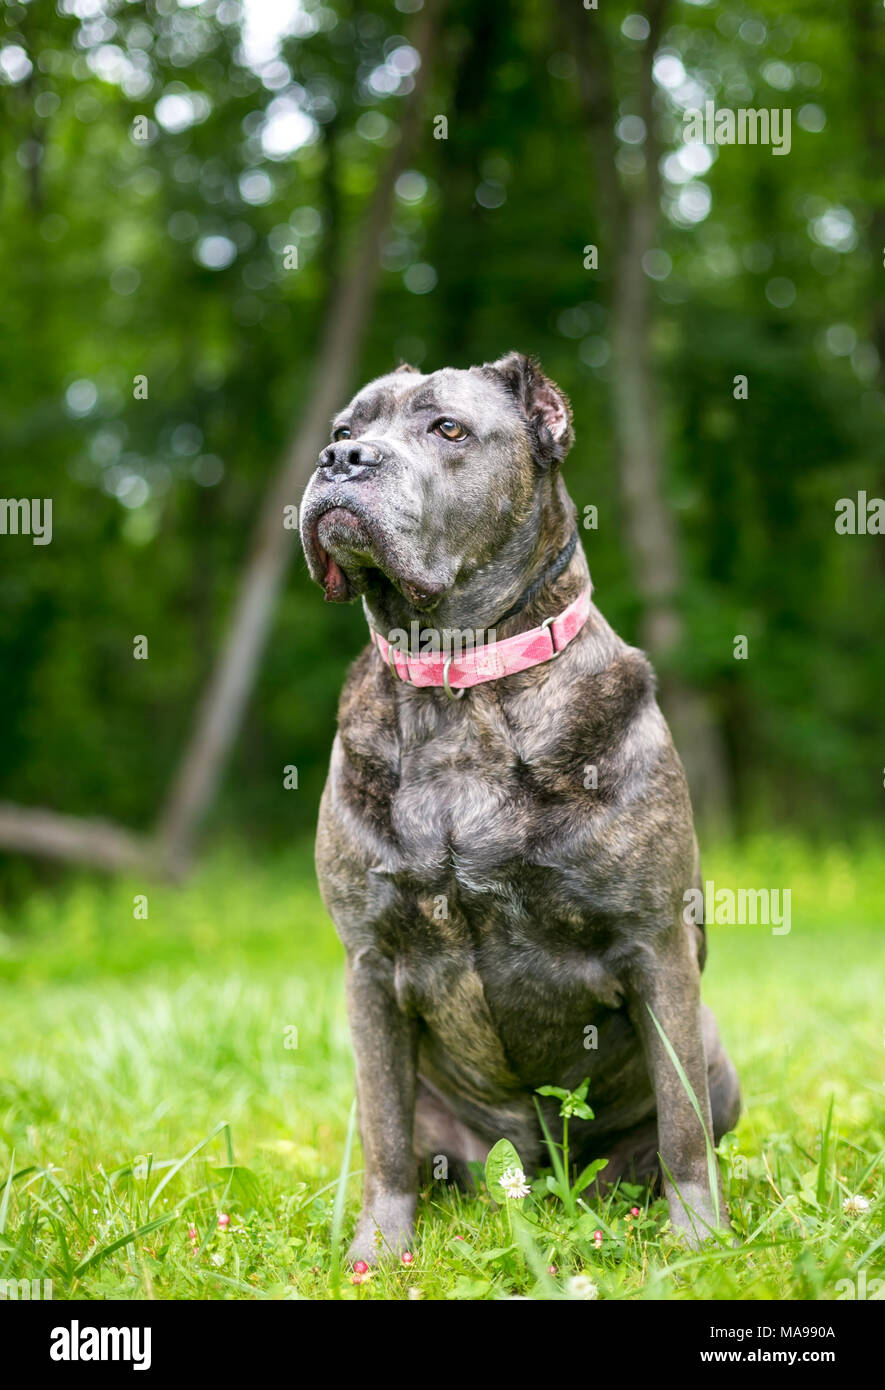 Cane Corso perros de raza mixta con orejas recortadas Foto de stock